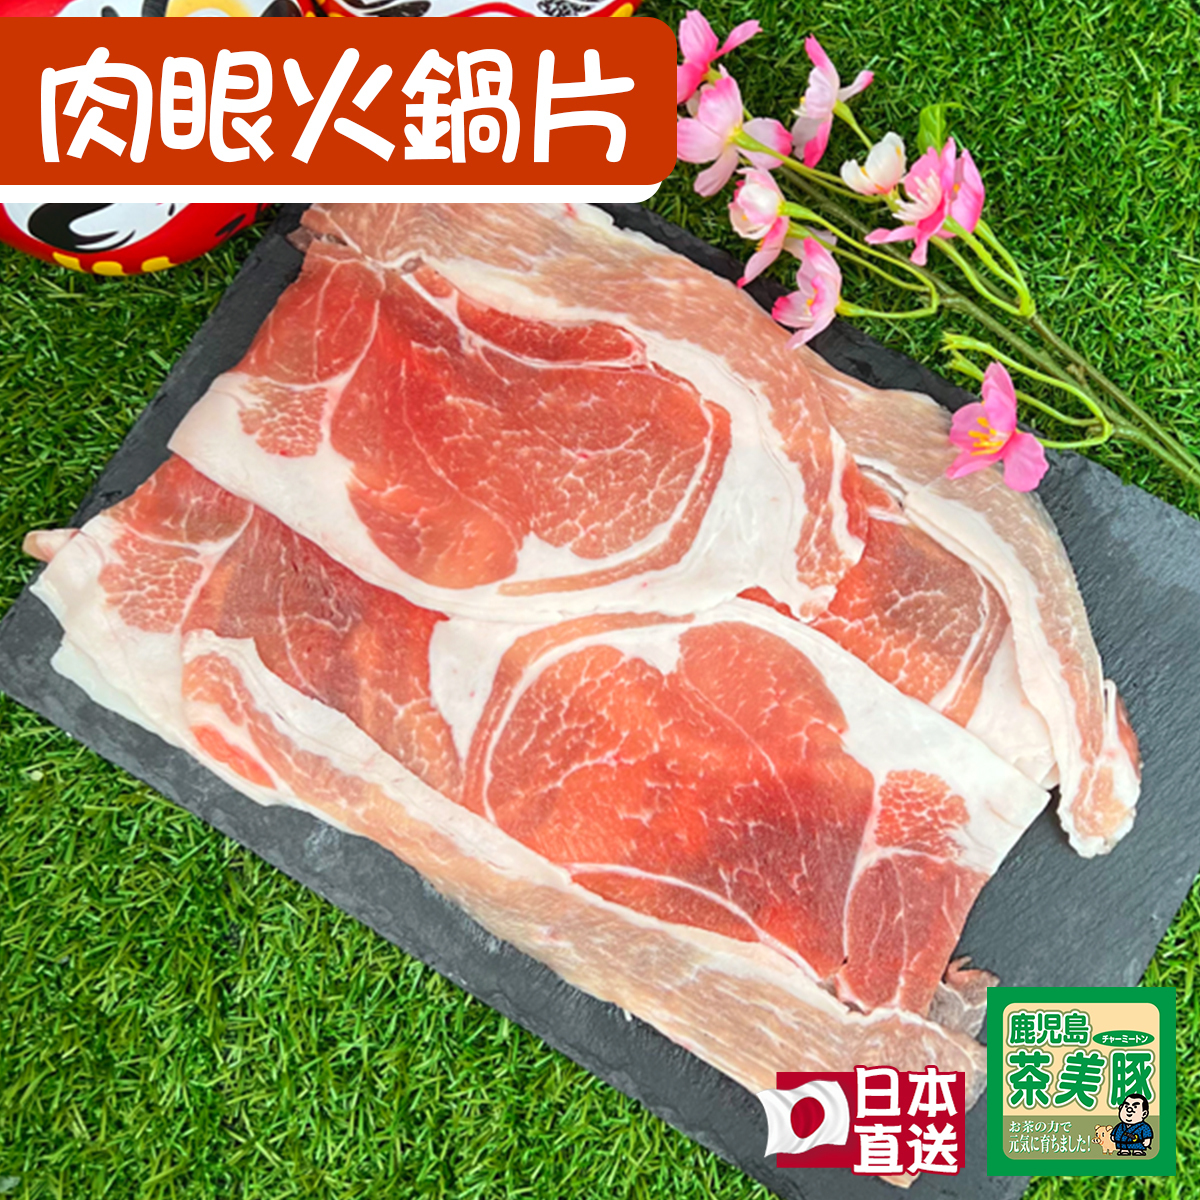 日本茶美豚- 肉眼火鍋片(急凍)(est.150-180g) #打邊爐#豚肉#燒肉#壽喜燒